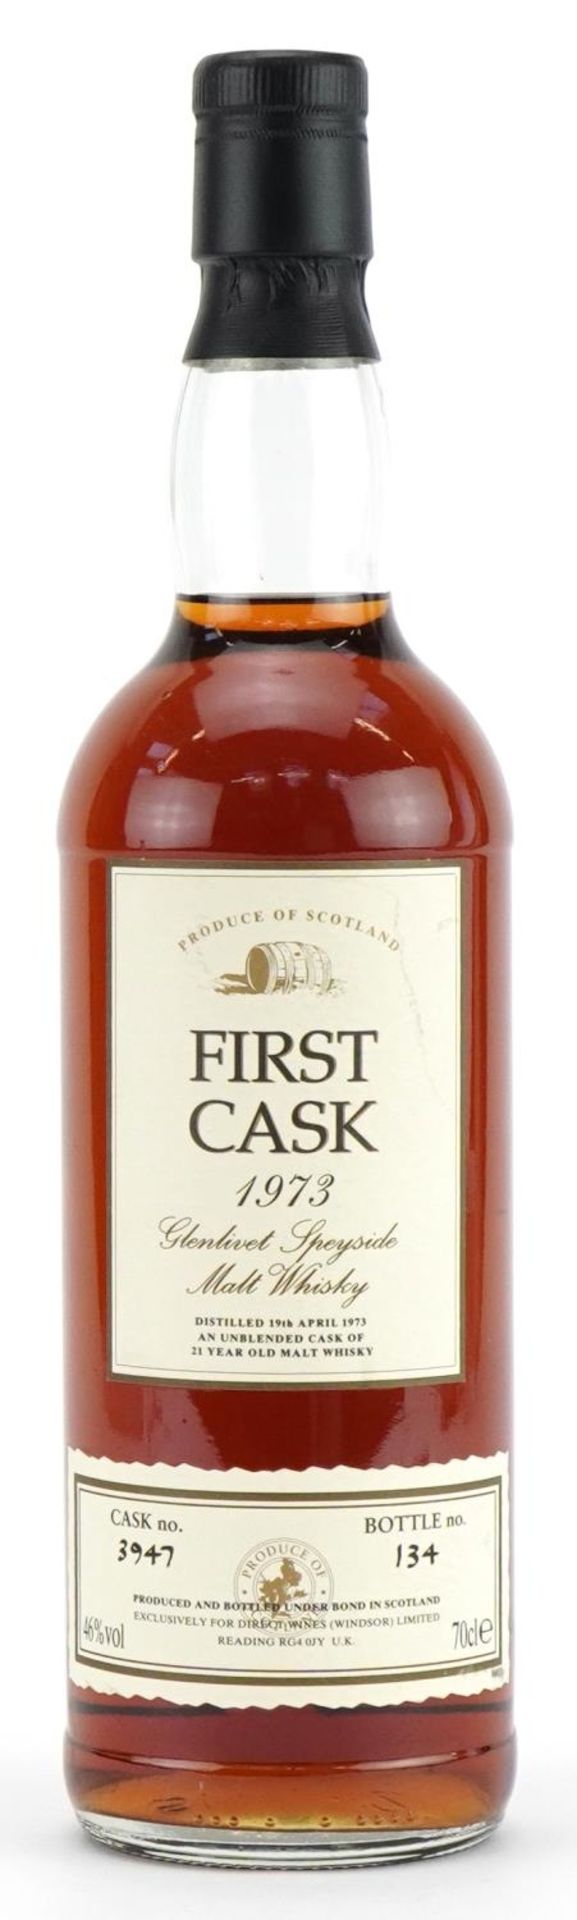 Bottle of First Cask 1973 Glenlivet Speyside 21 Year Old Malt whisky, cask number 3947, bottle